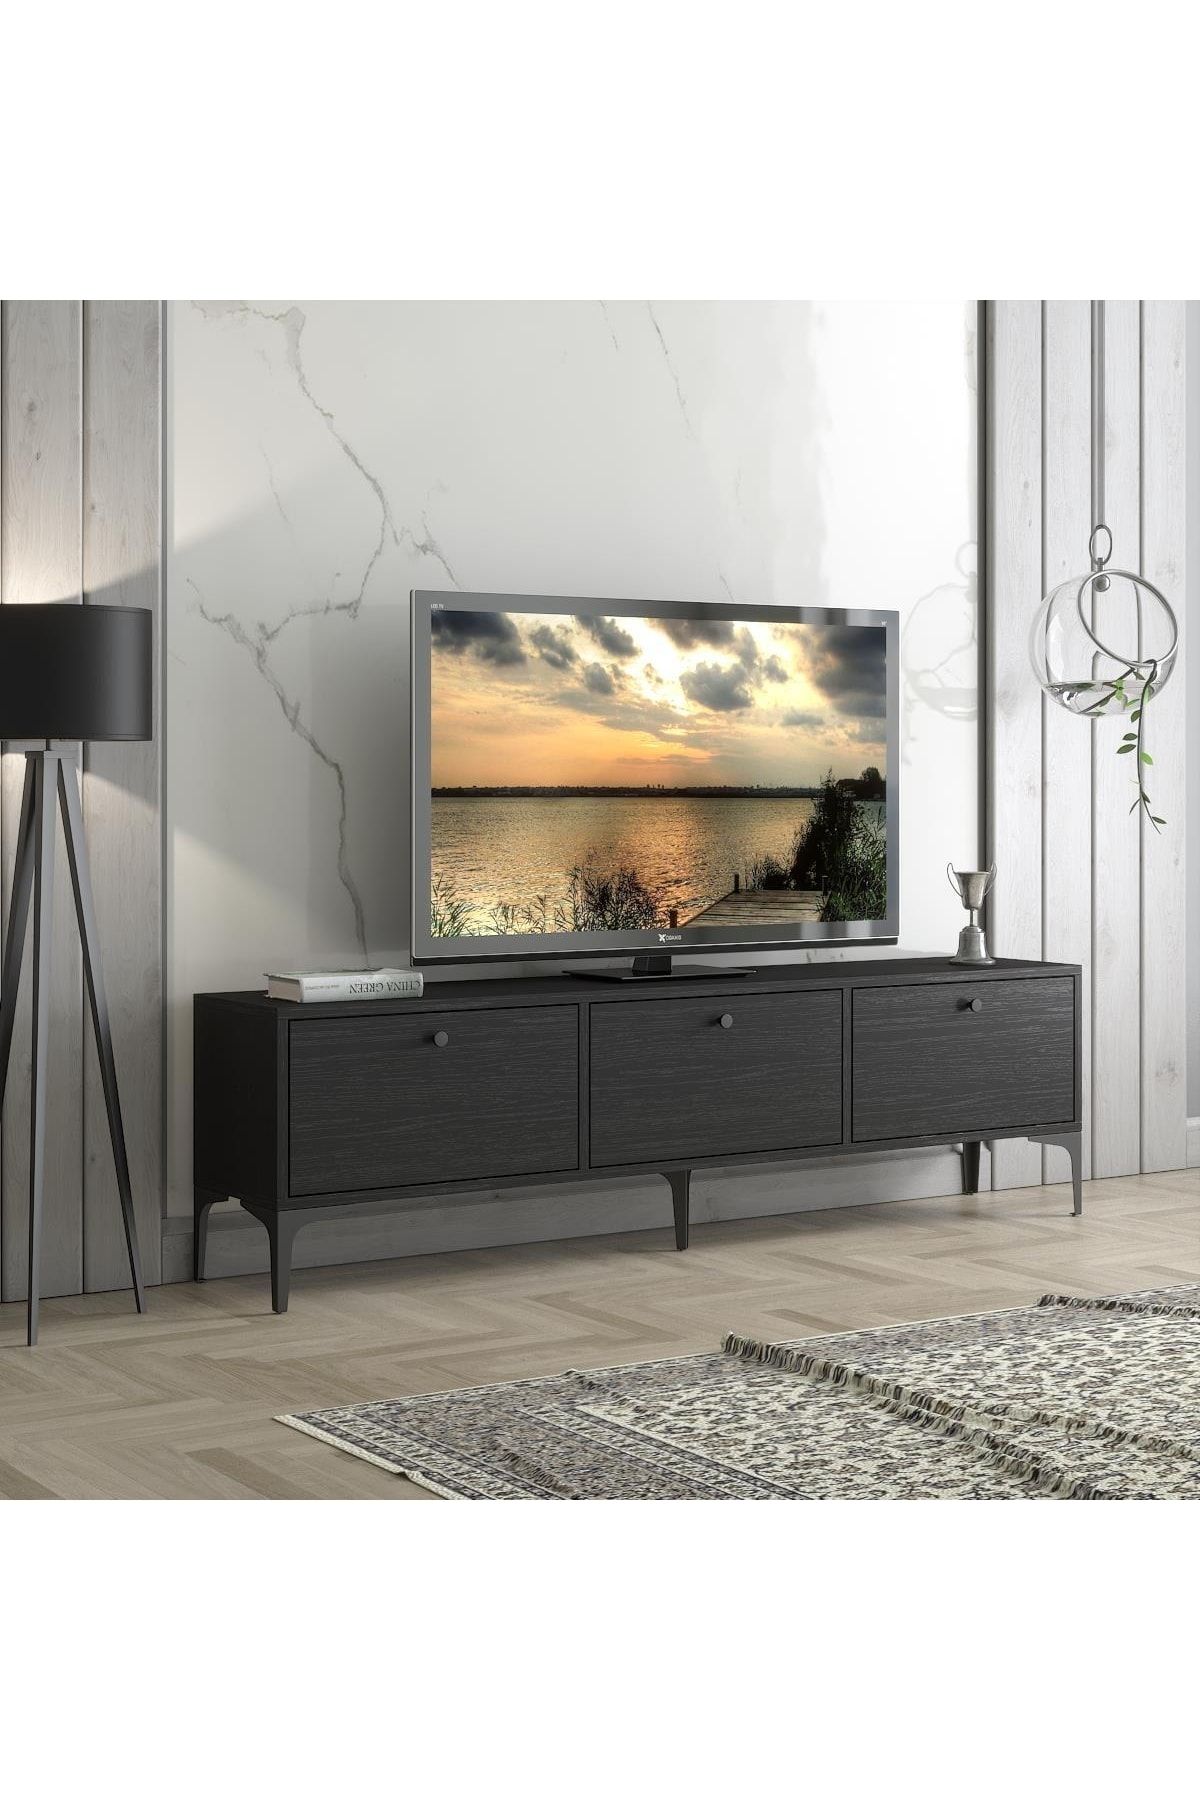 Wood'n Love Etna Premium Bakır Metal Ayaklı Dolaplı 160 Cm Tv Ünitesi - Wood Siyah / Siyah